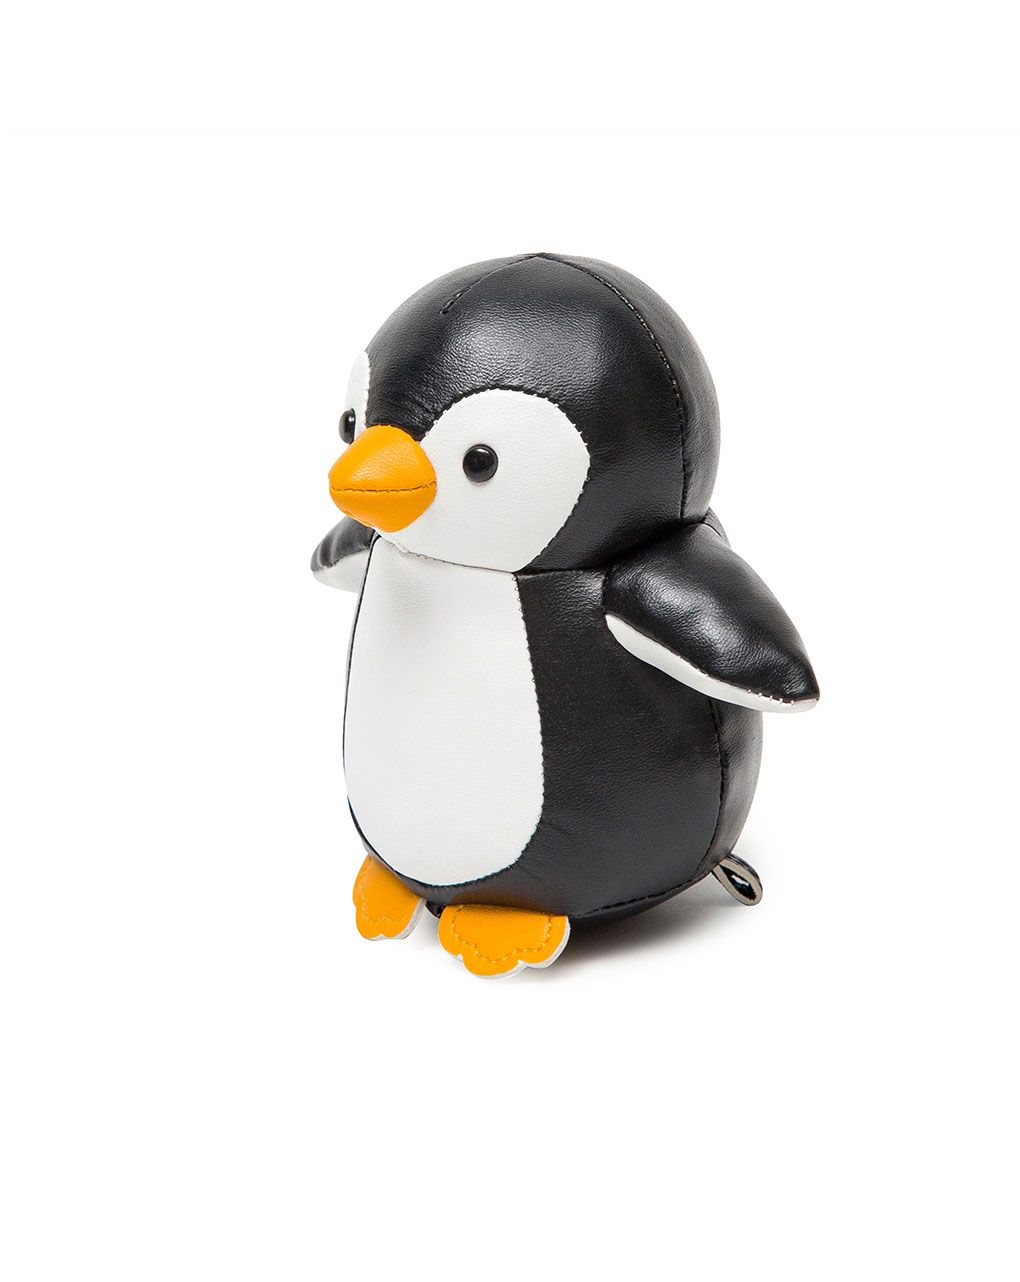 Martin il pinguino - little big friends